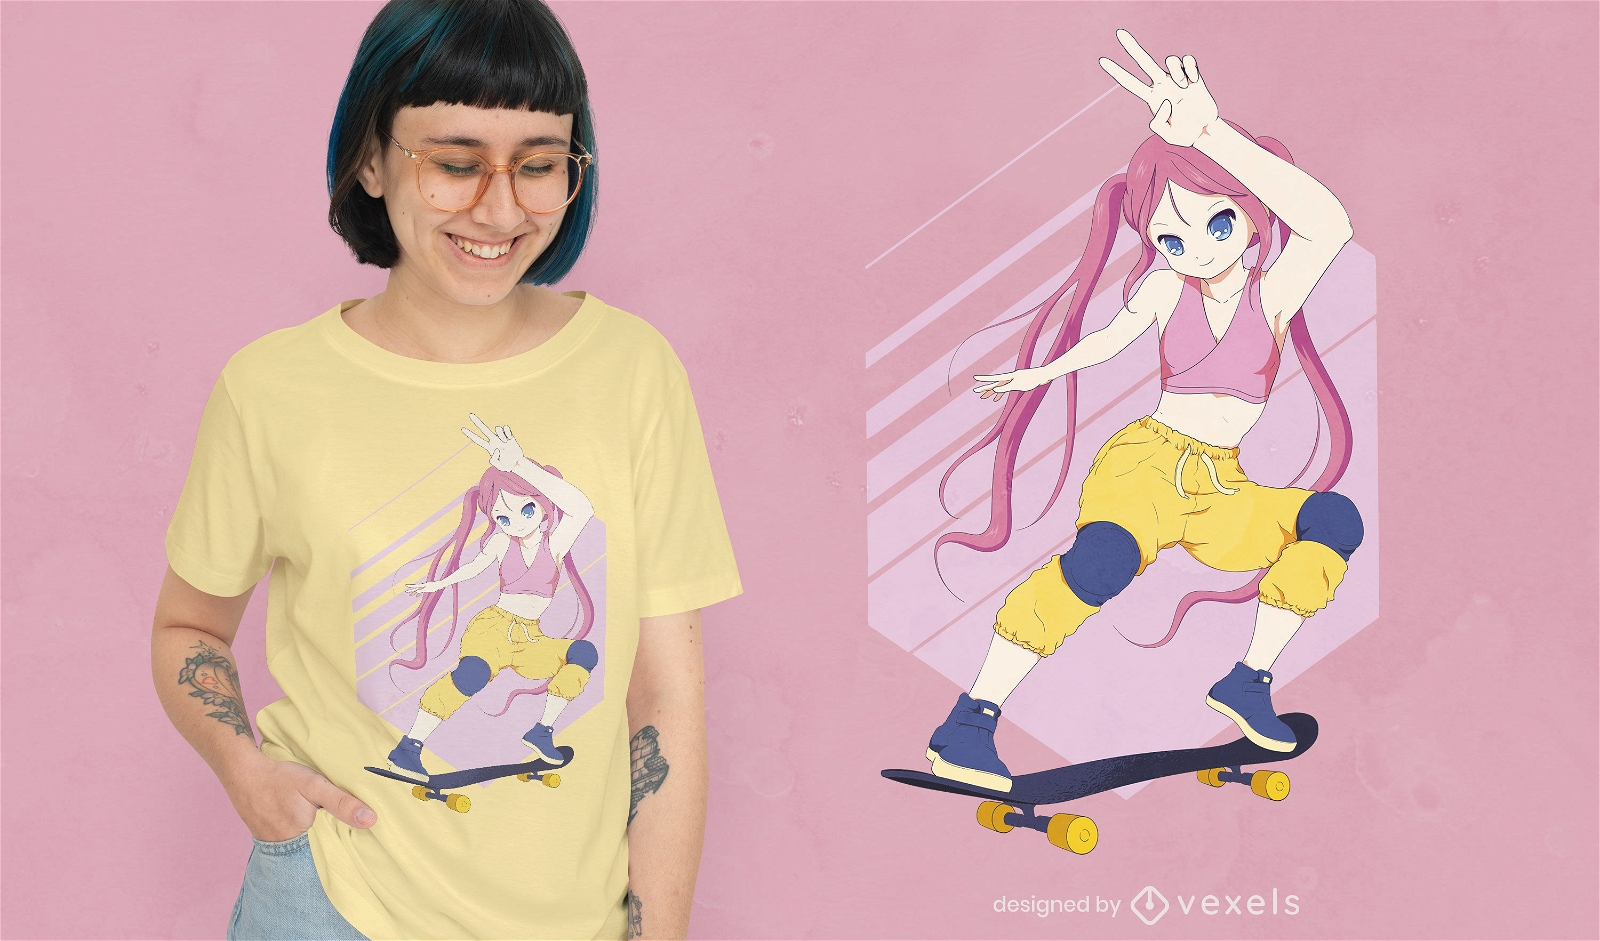 Anime skater girl t-shirt design